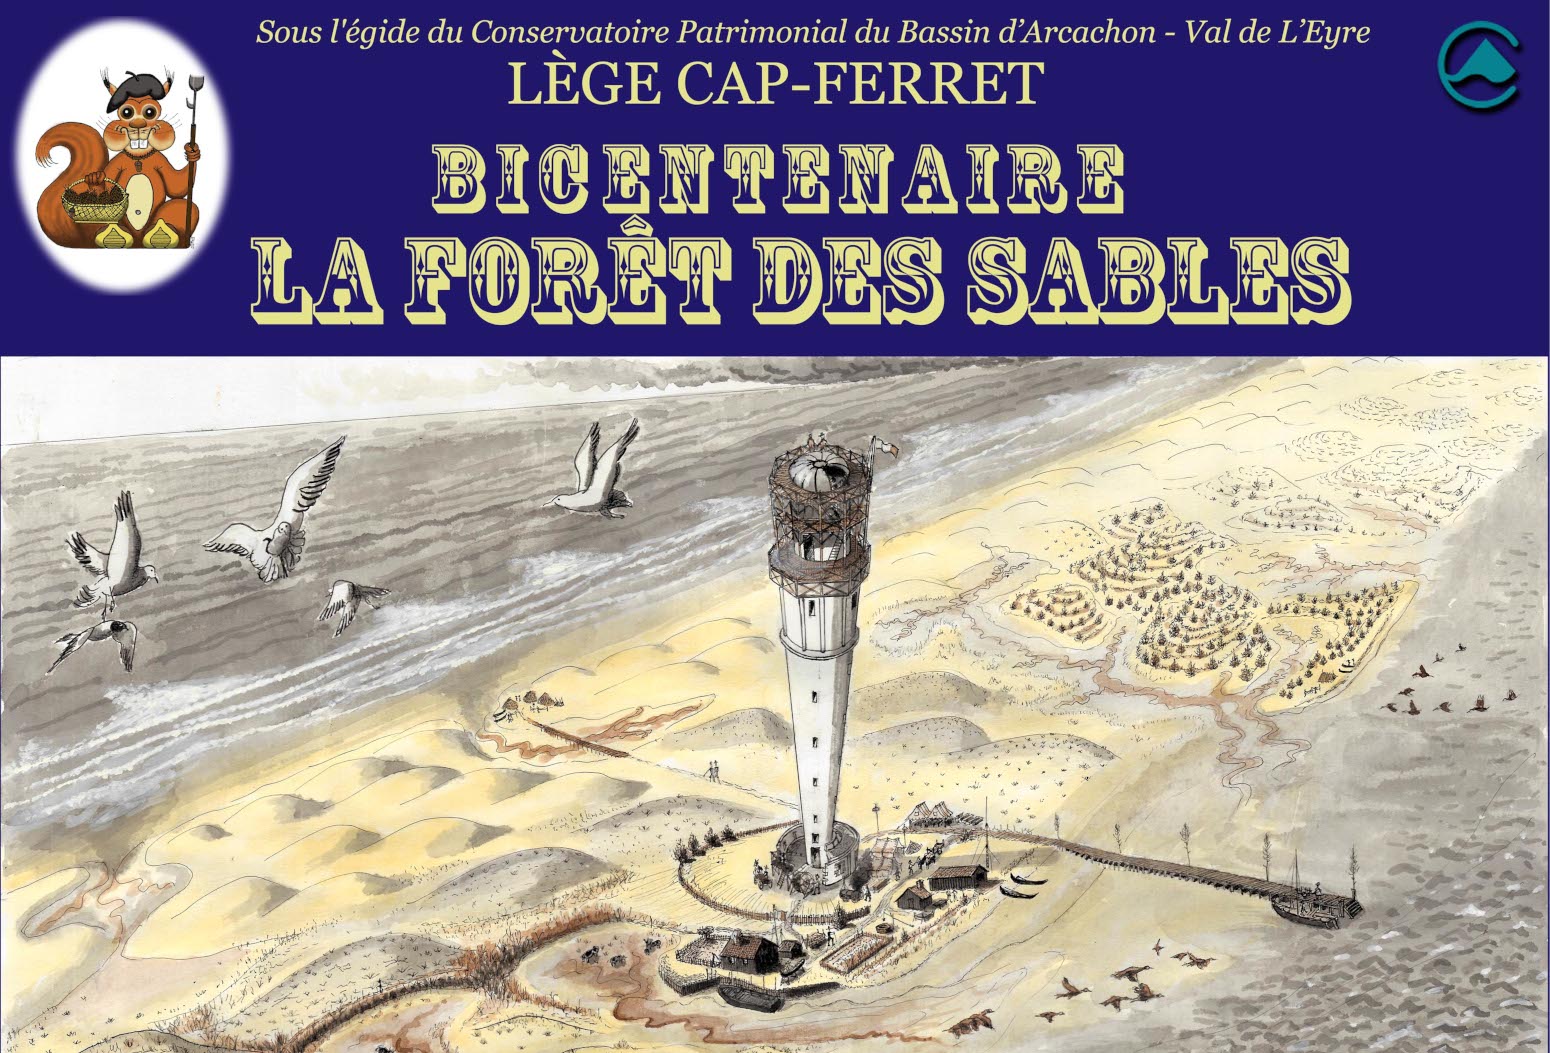 Exposition bicentenaire de la forêt des sables - Lège-Cap Ferret 2023